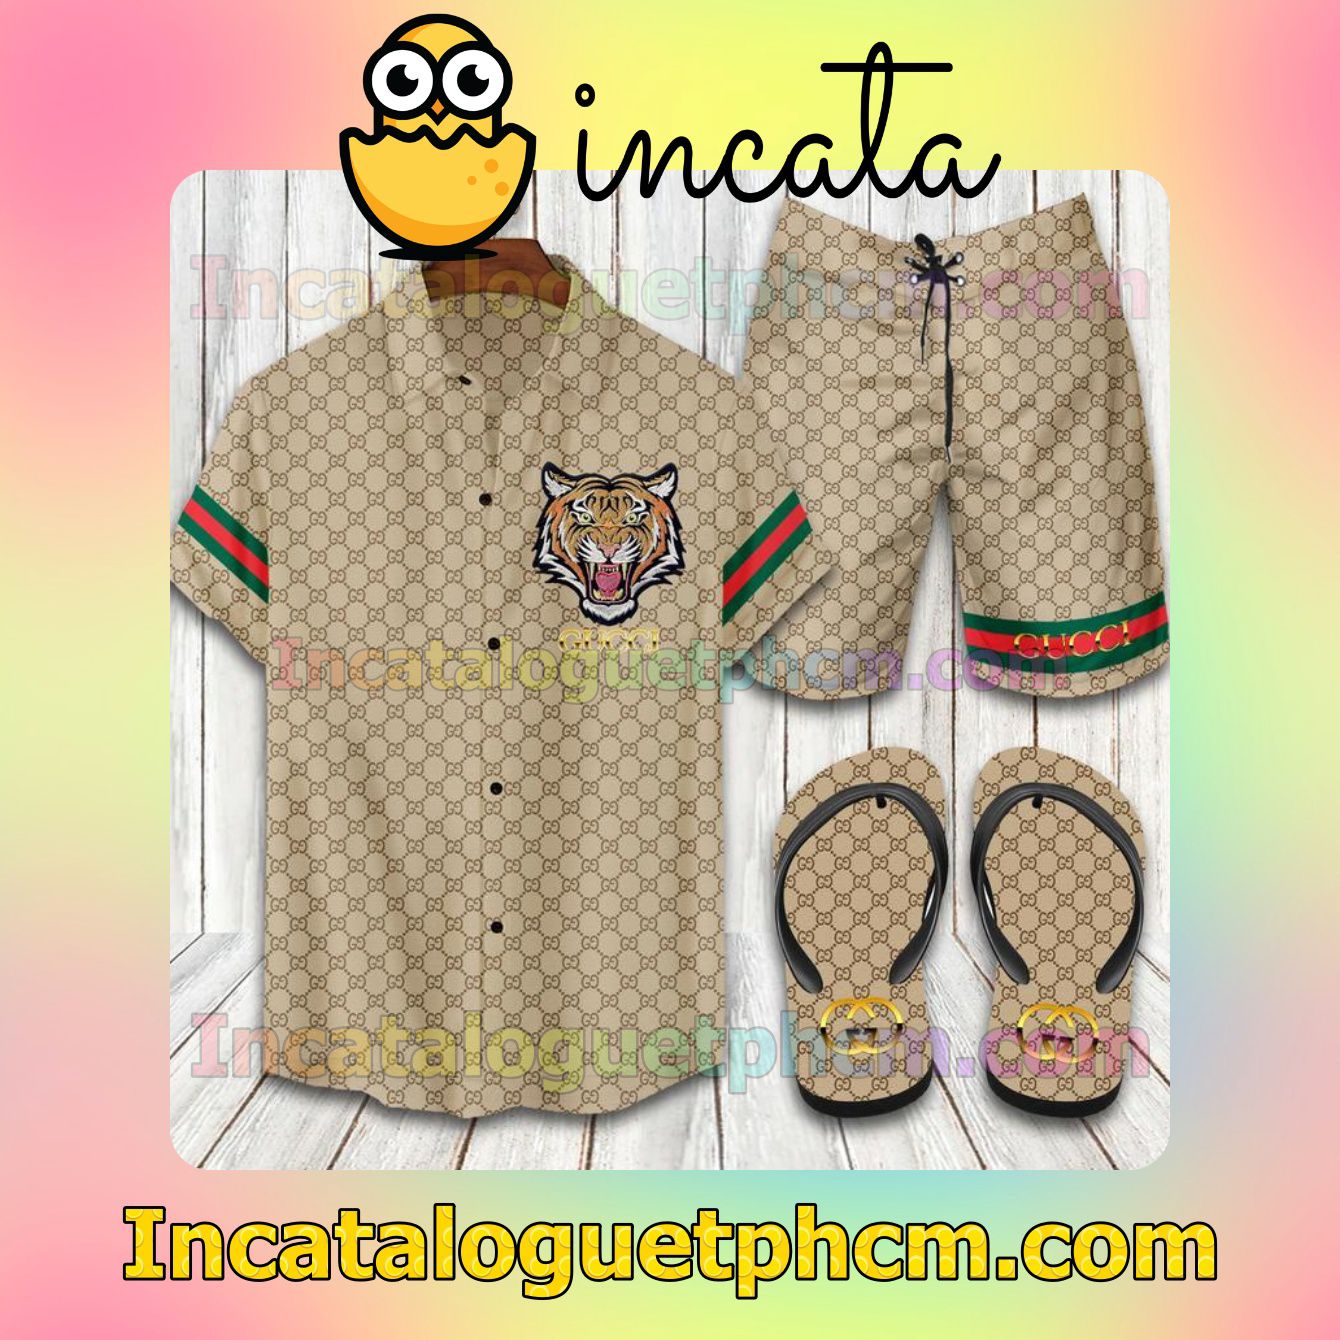 Gucci Tiger Aloha Shirt And Shorts